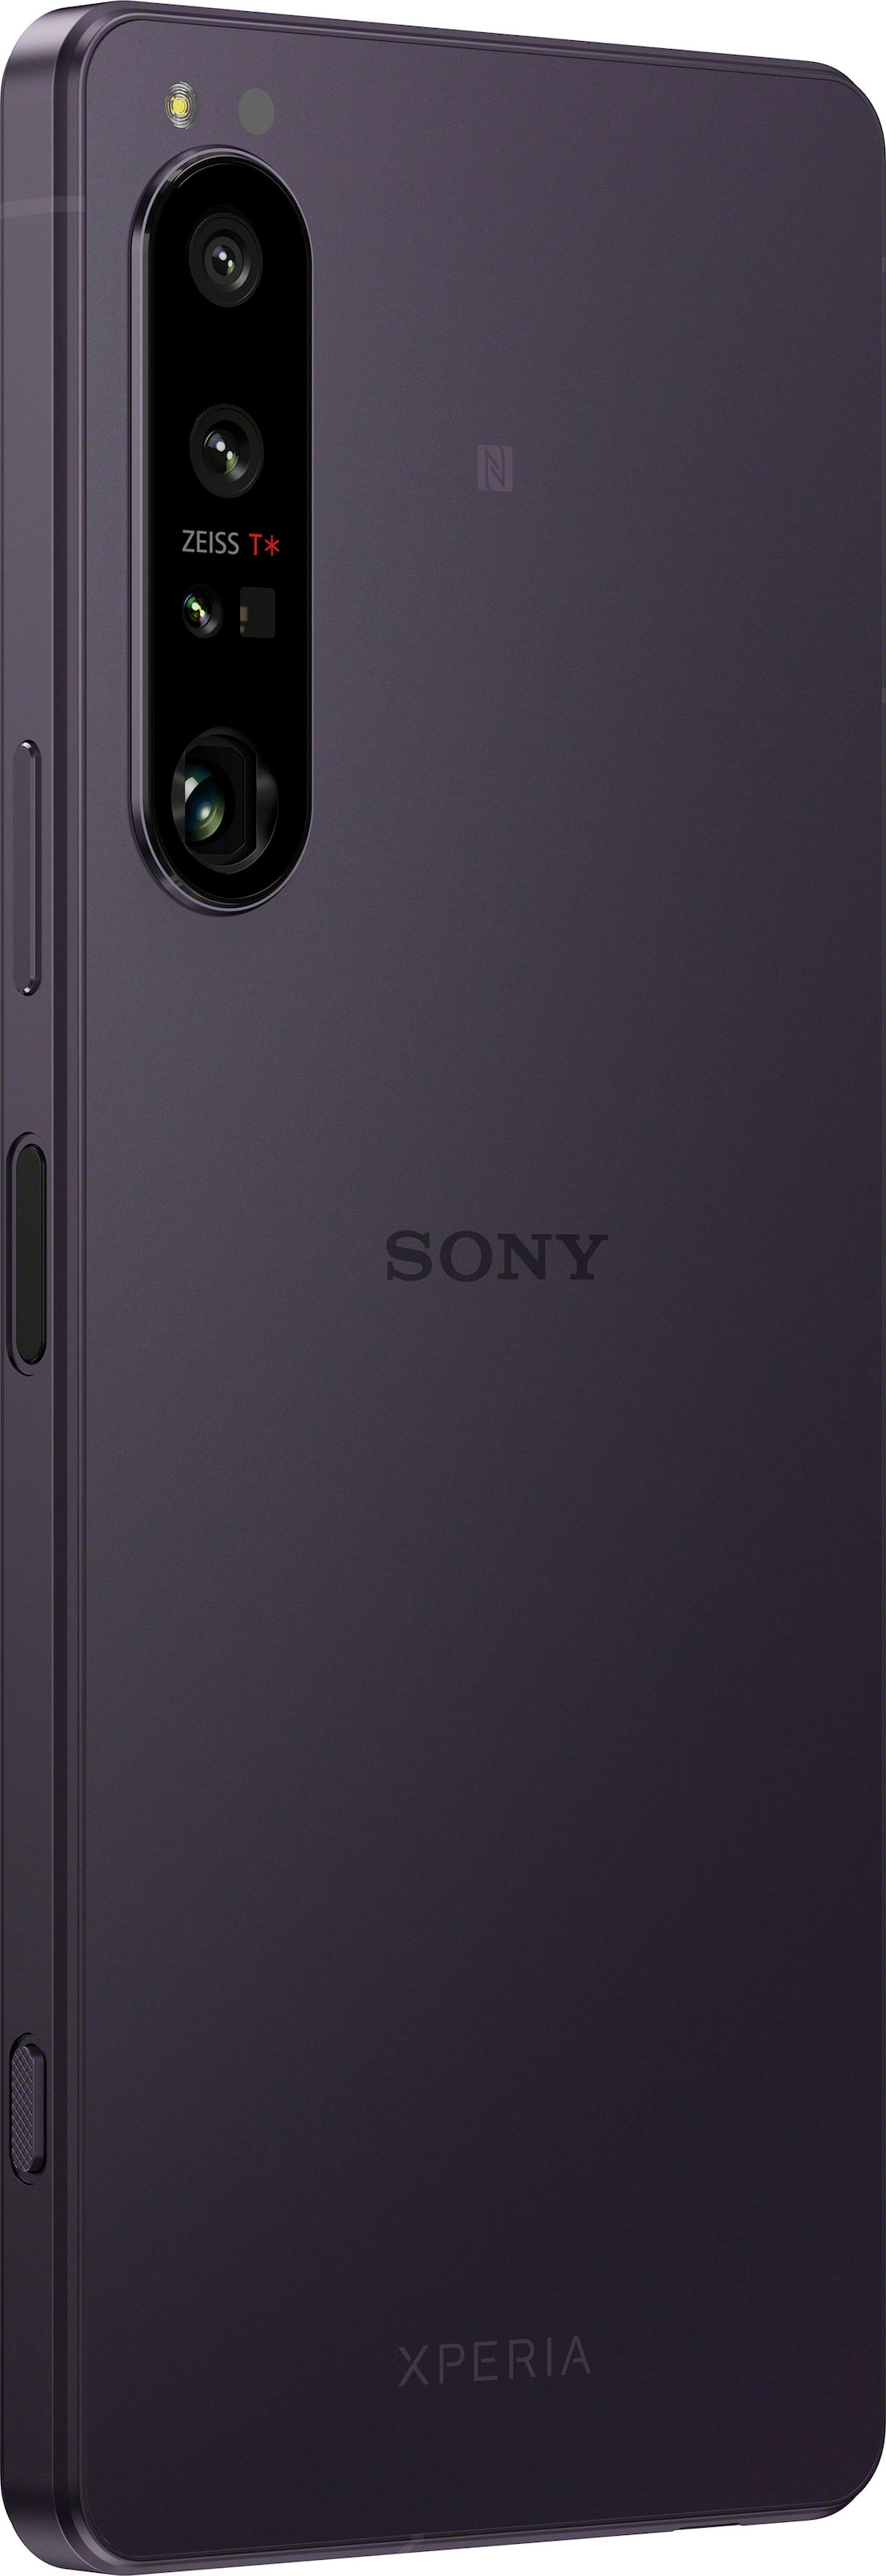 IV schwarz, Sony Kamera OTTO bestellen jetzt MP cm/6,5 12 5G«, Smartphone 256 Zoll, 16,51 »XPERIA Speicherplatz, 1 bei GB